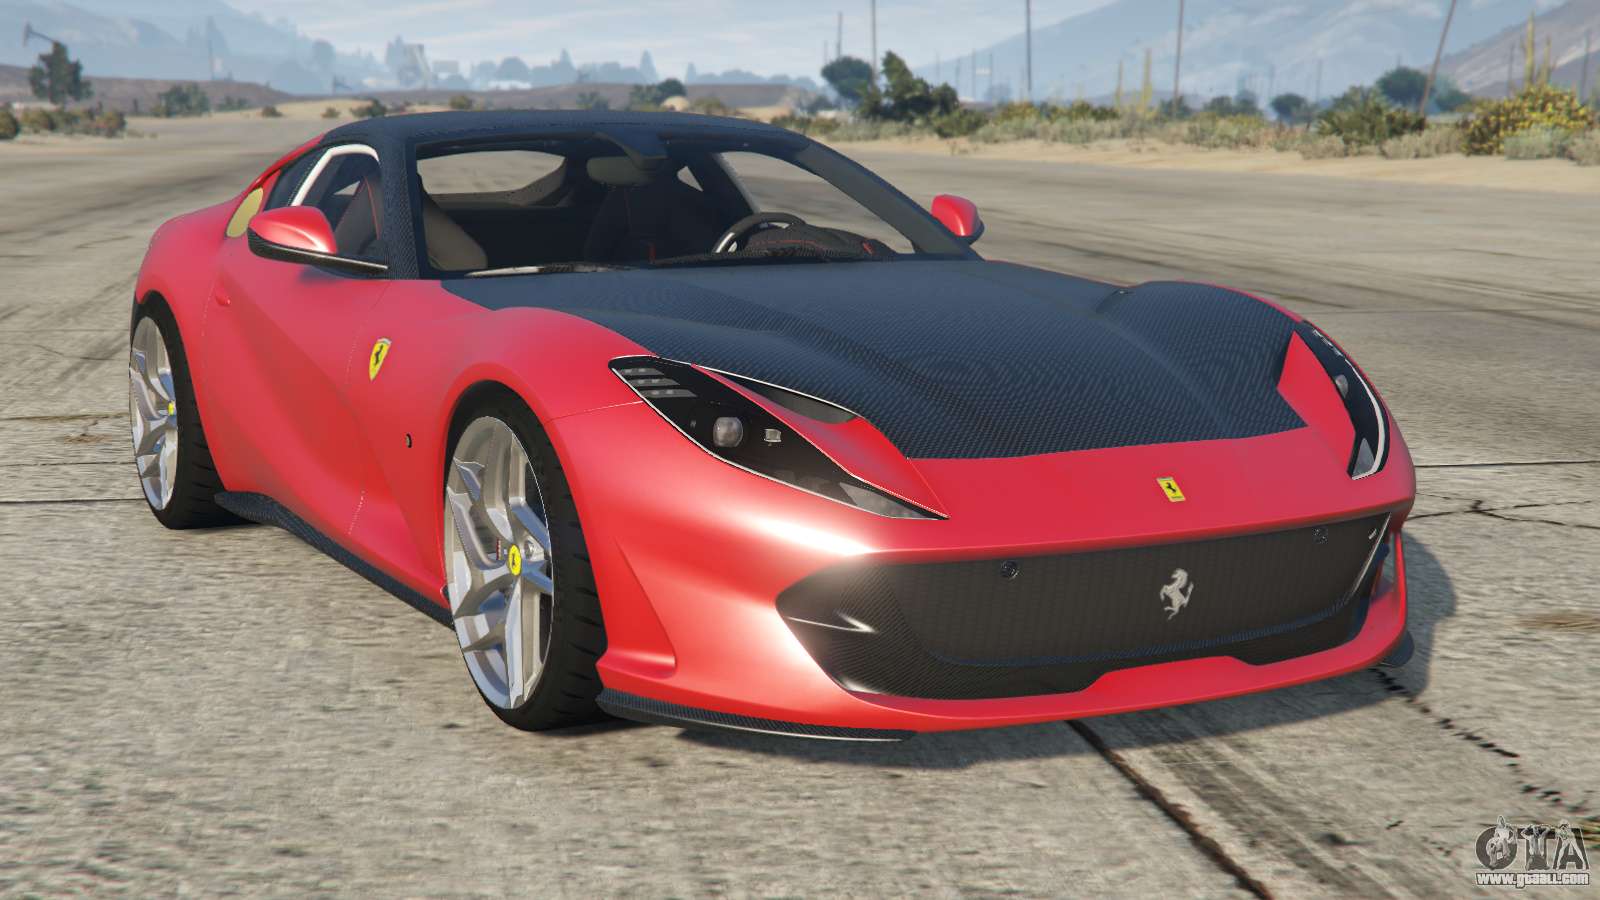 Ferrari 812 Superfast for GTA 5